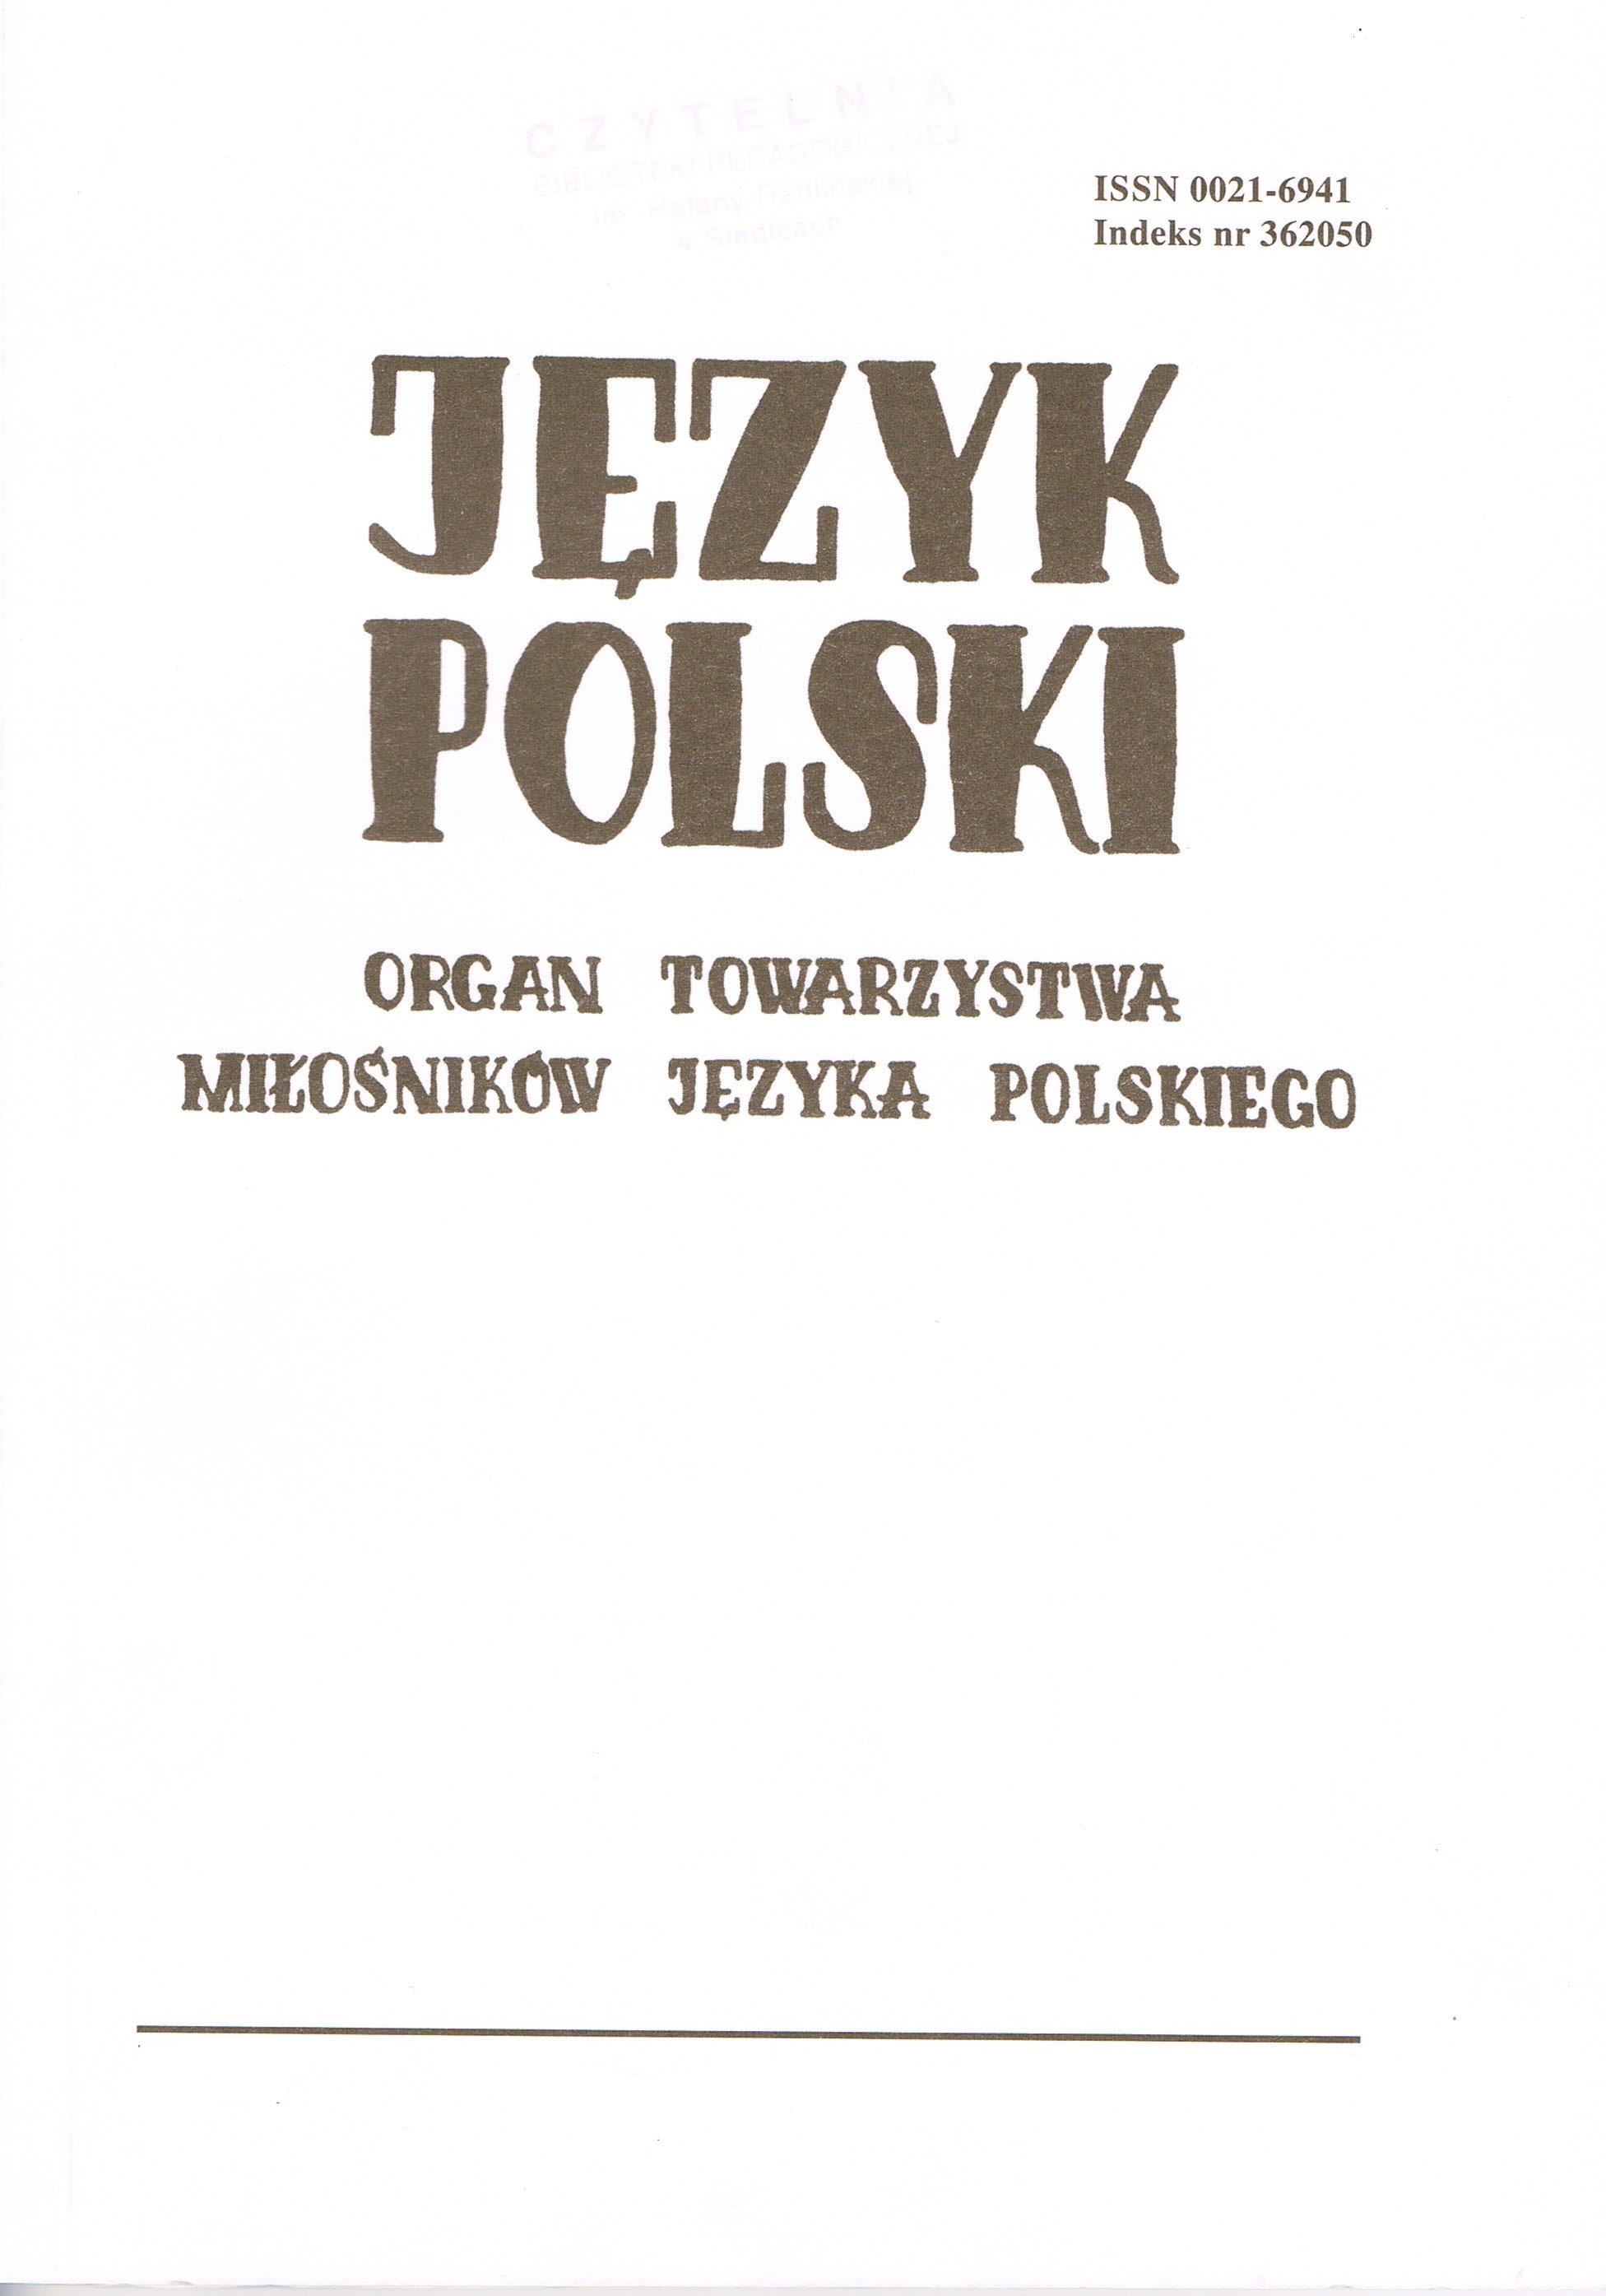 What does Old Polish owe to king Władysław Jagiełło? Cover Image